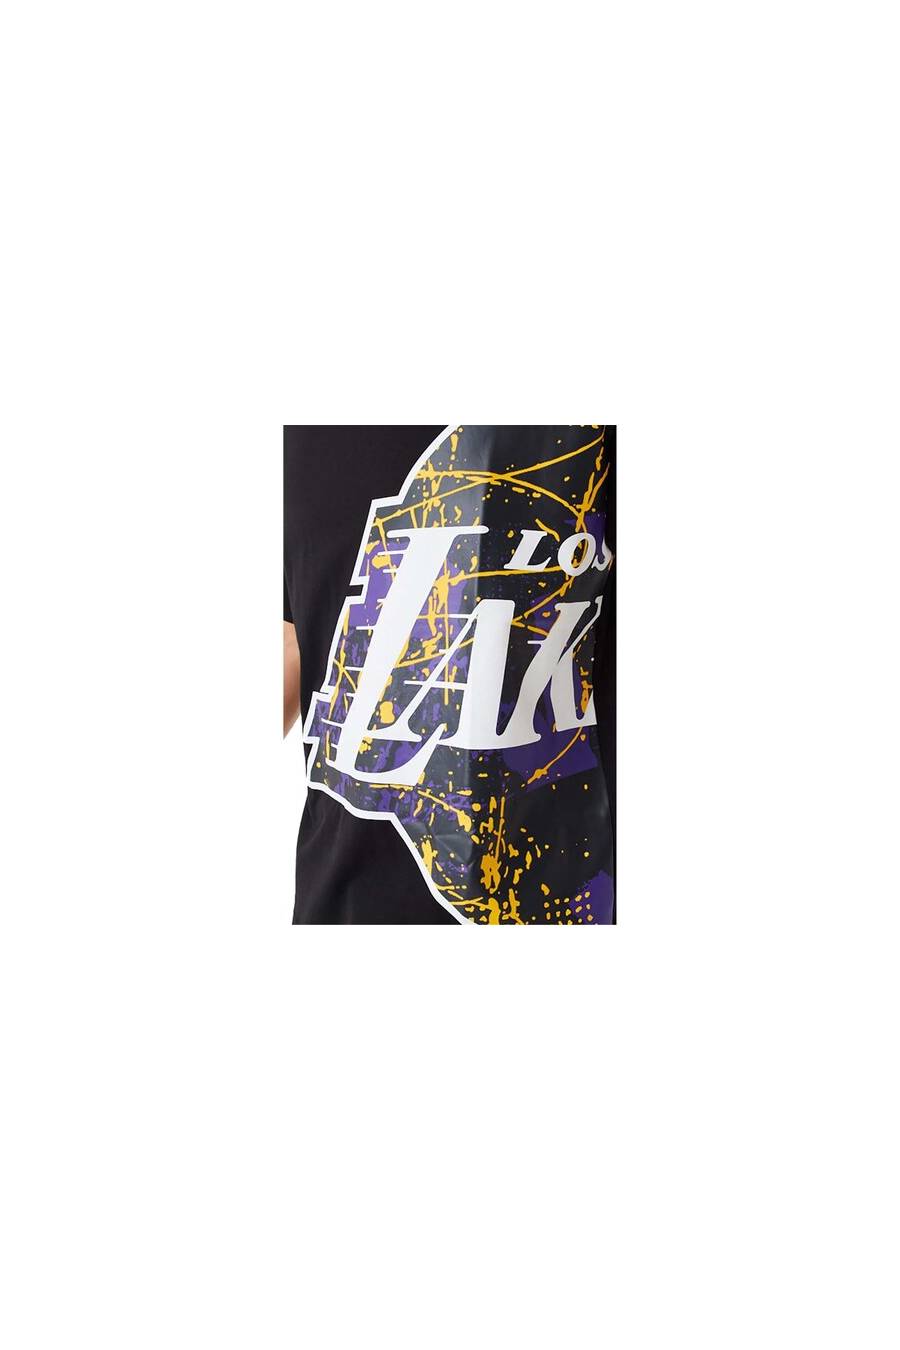 Camiseta New Era Los Angeles Lakers 60332144